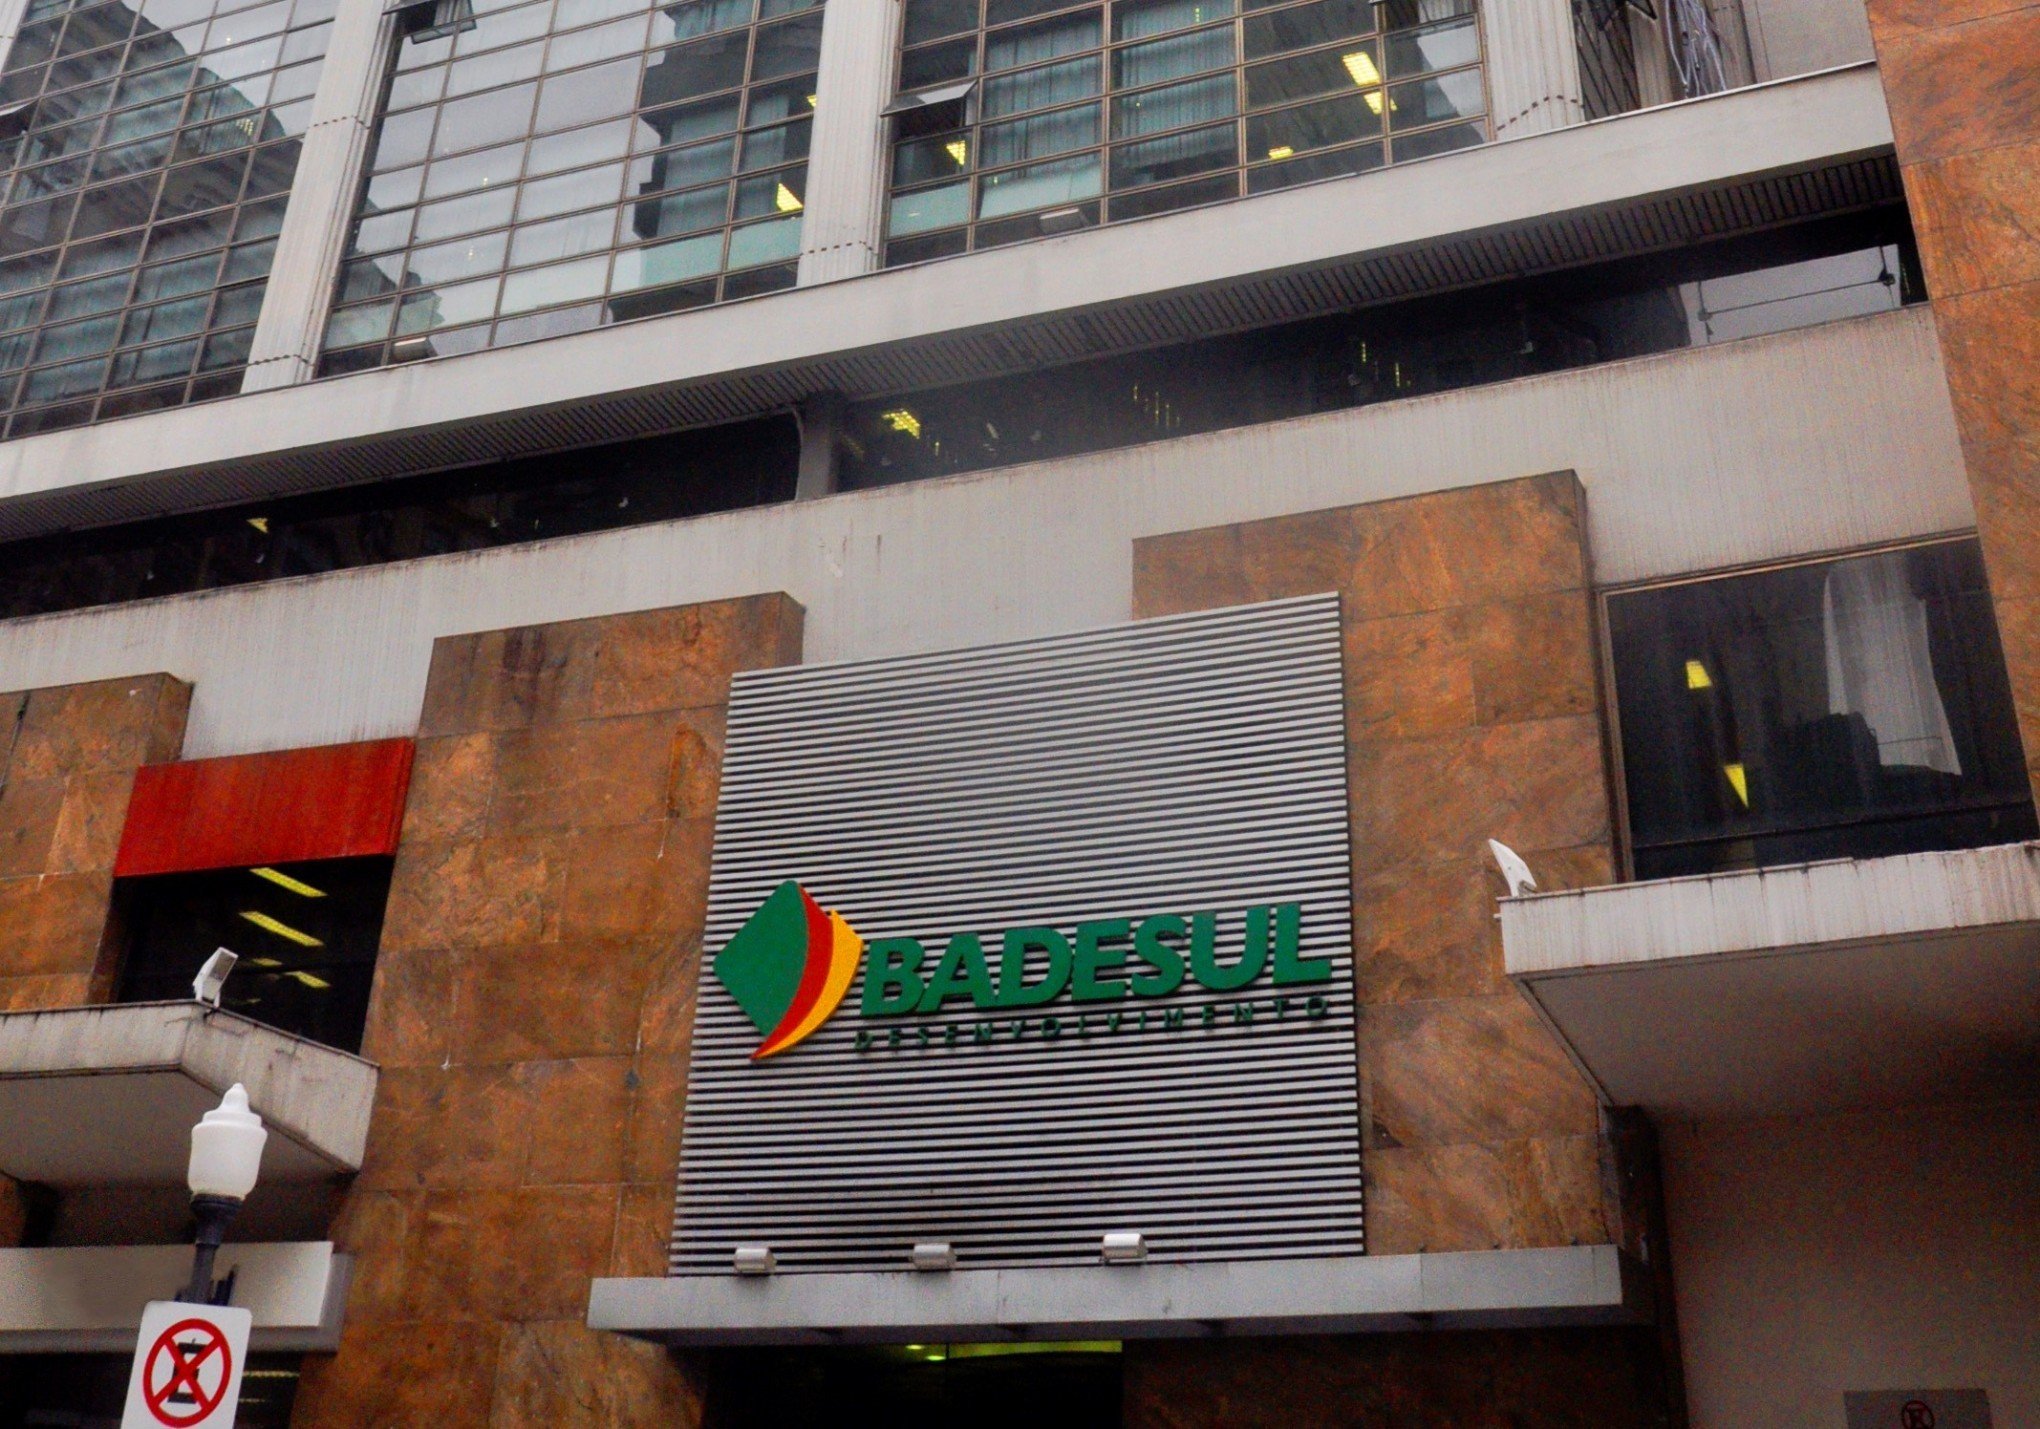 Badesul amplia linhas de crédito e investirá mais de R$ 286 milhões em empresas de inovação